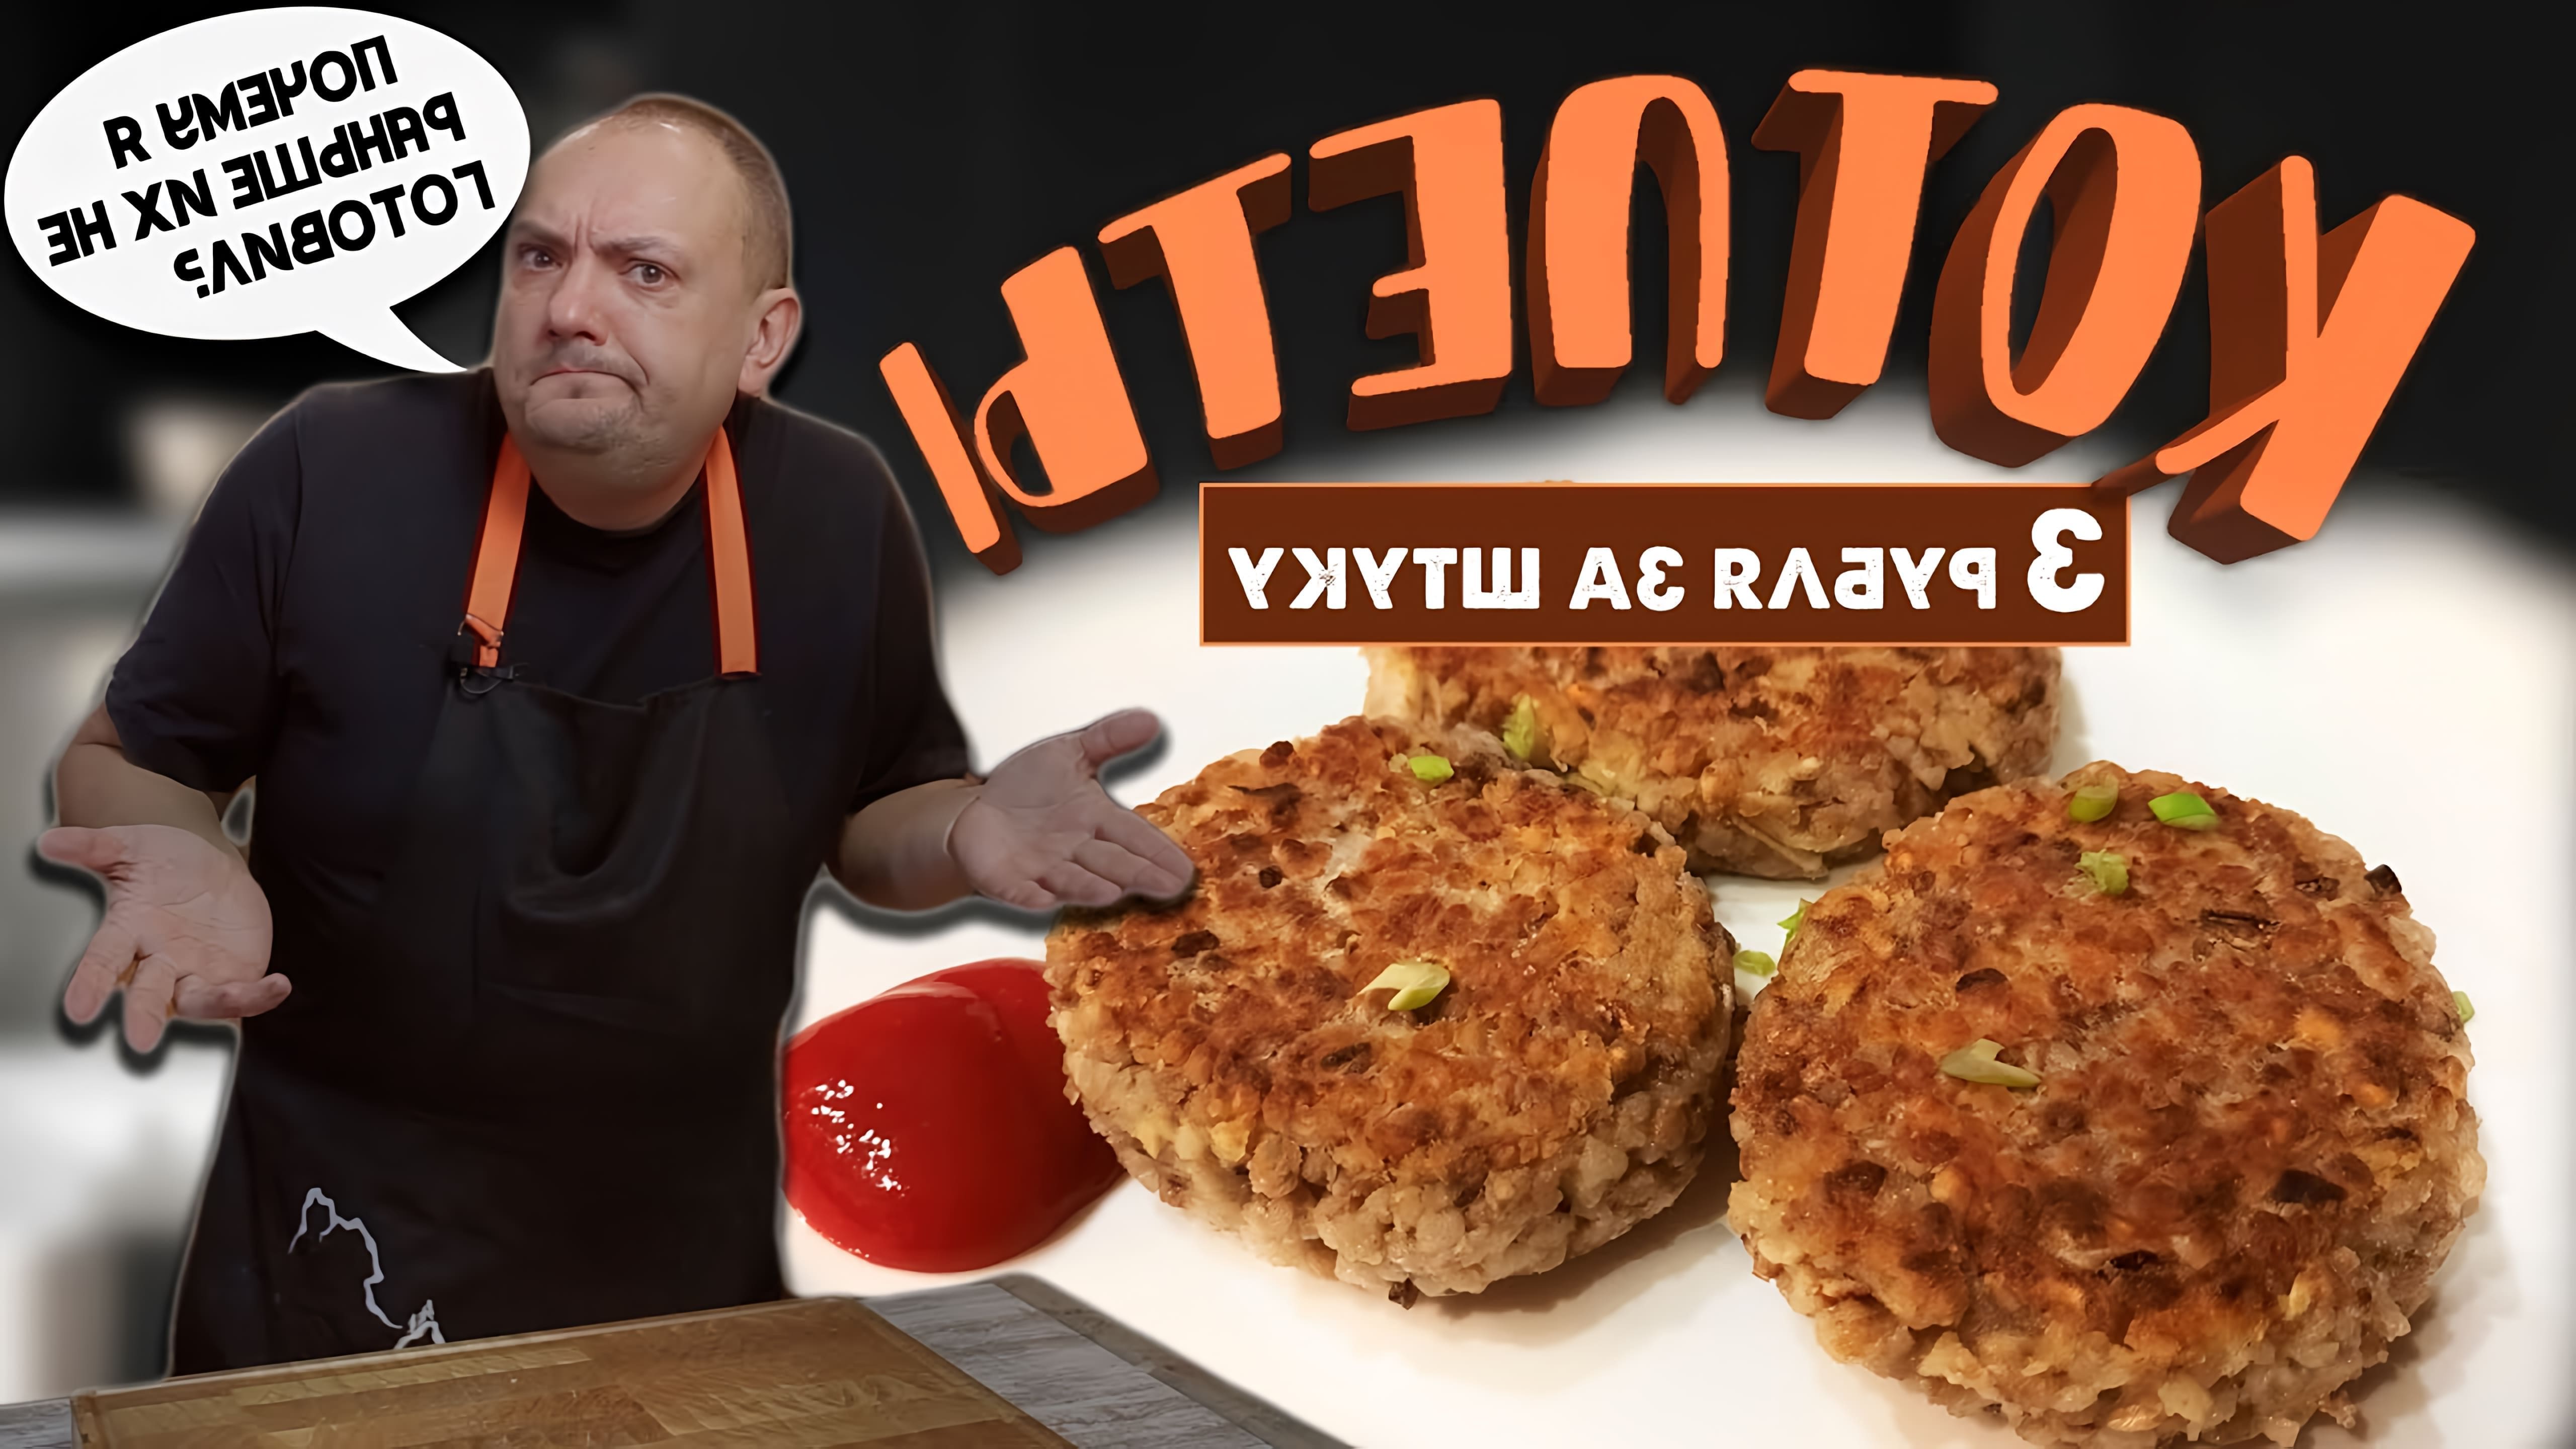 В этом видео автор рассказывает о том, как приготовить гречневые котлеты по простому рецепту